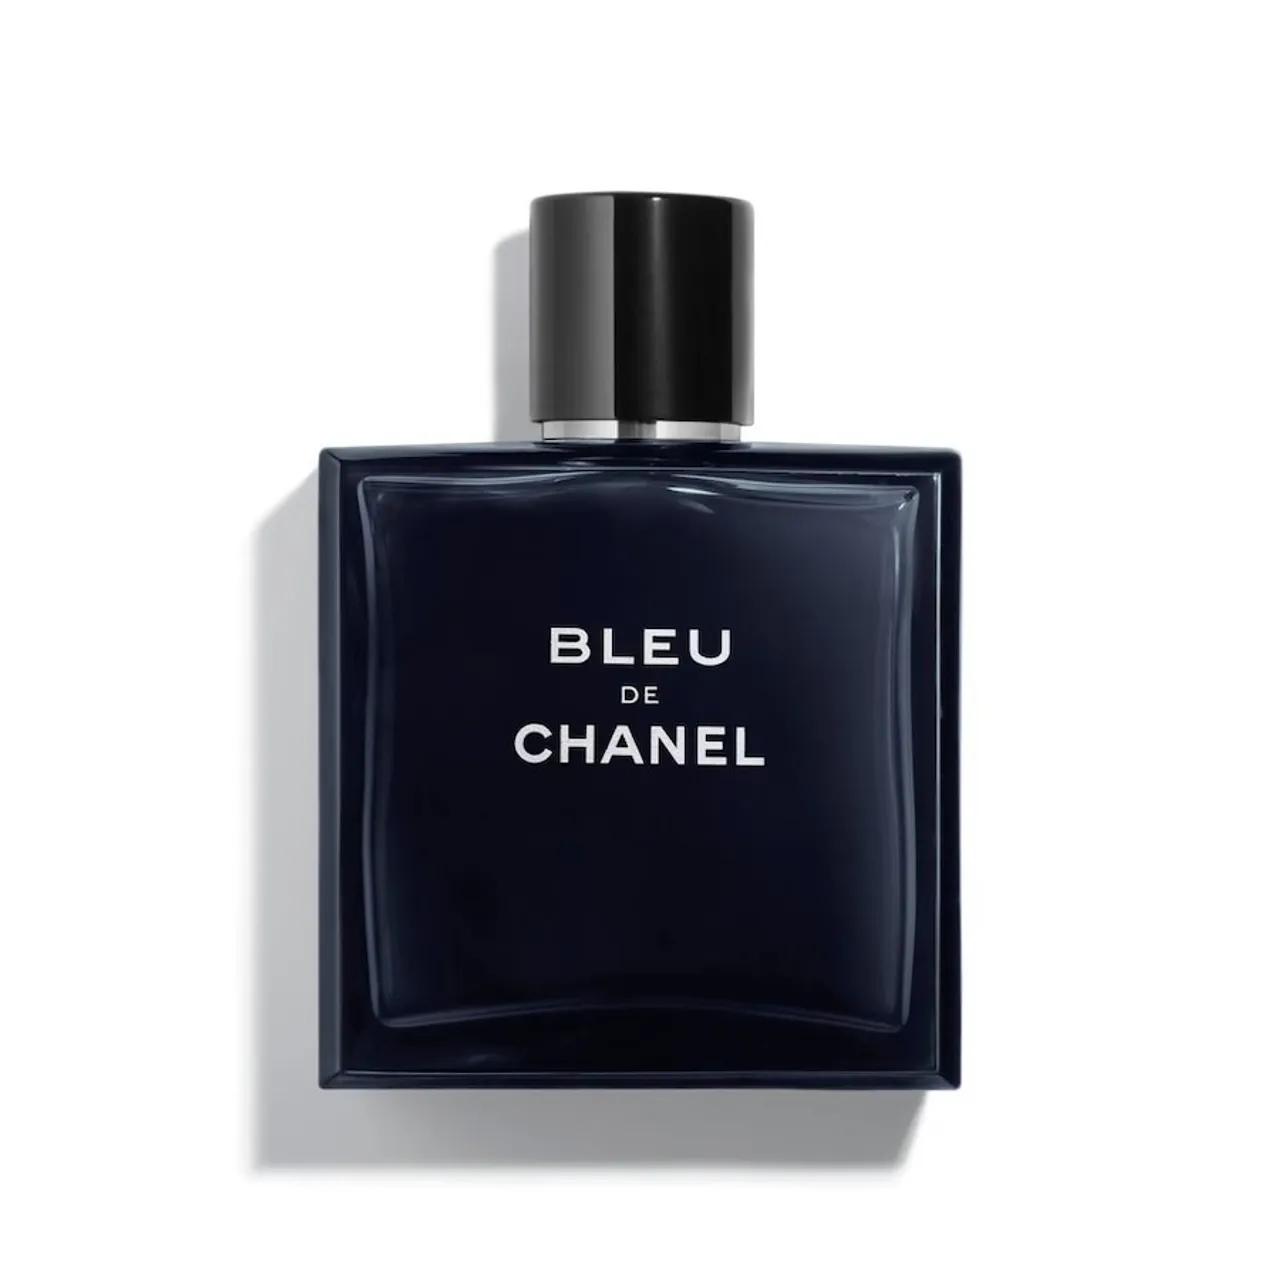 CHANEL - BLEU DE CHANEL EAU DE TOILETTE VAPORISATEUR Parfum 100 ml